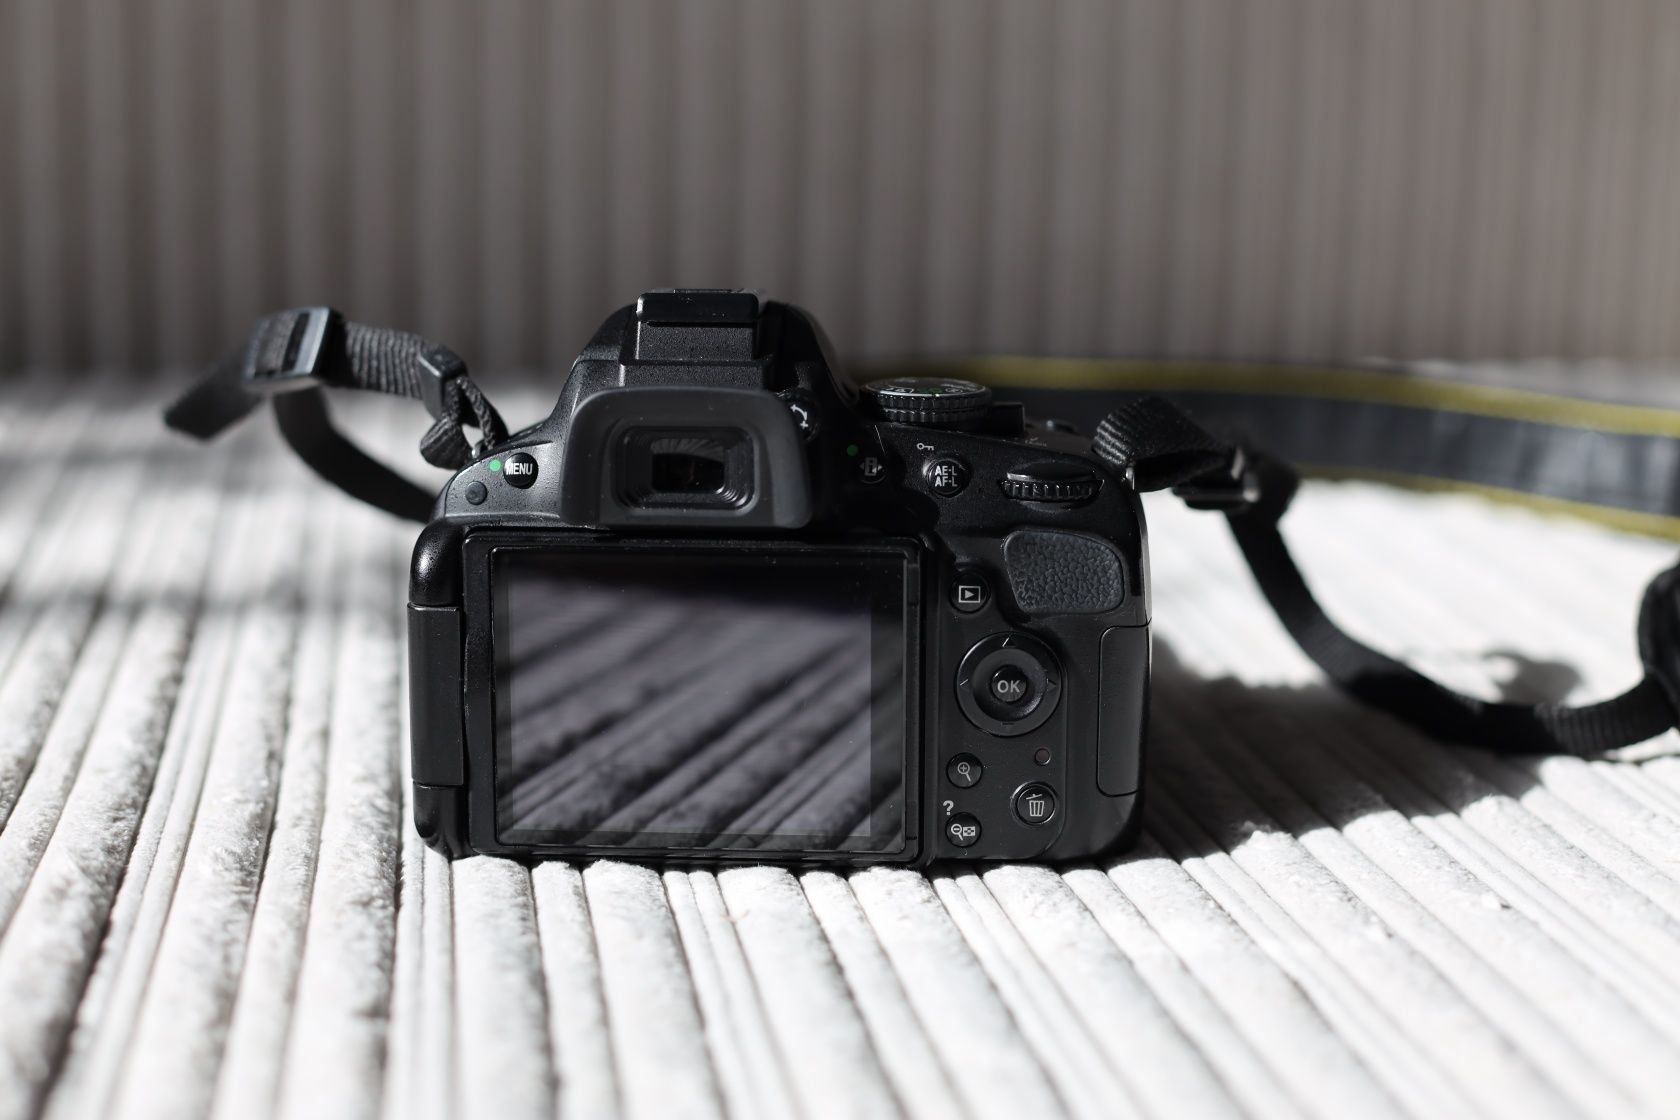 Продам фотоаппарат Nikon d5100 с китовым объективом 18-55